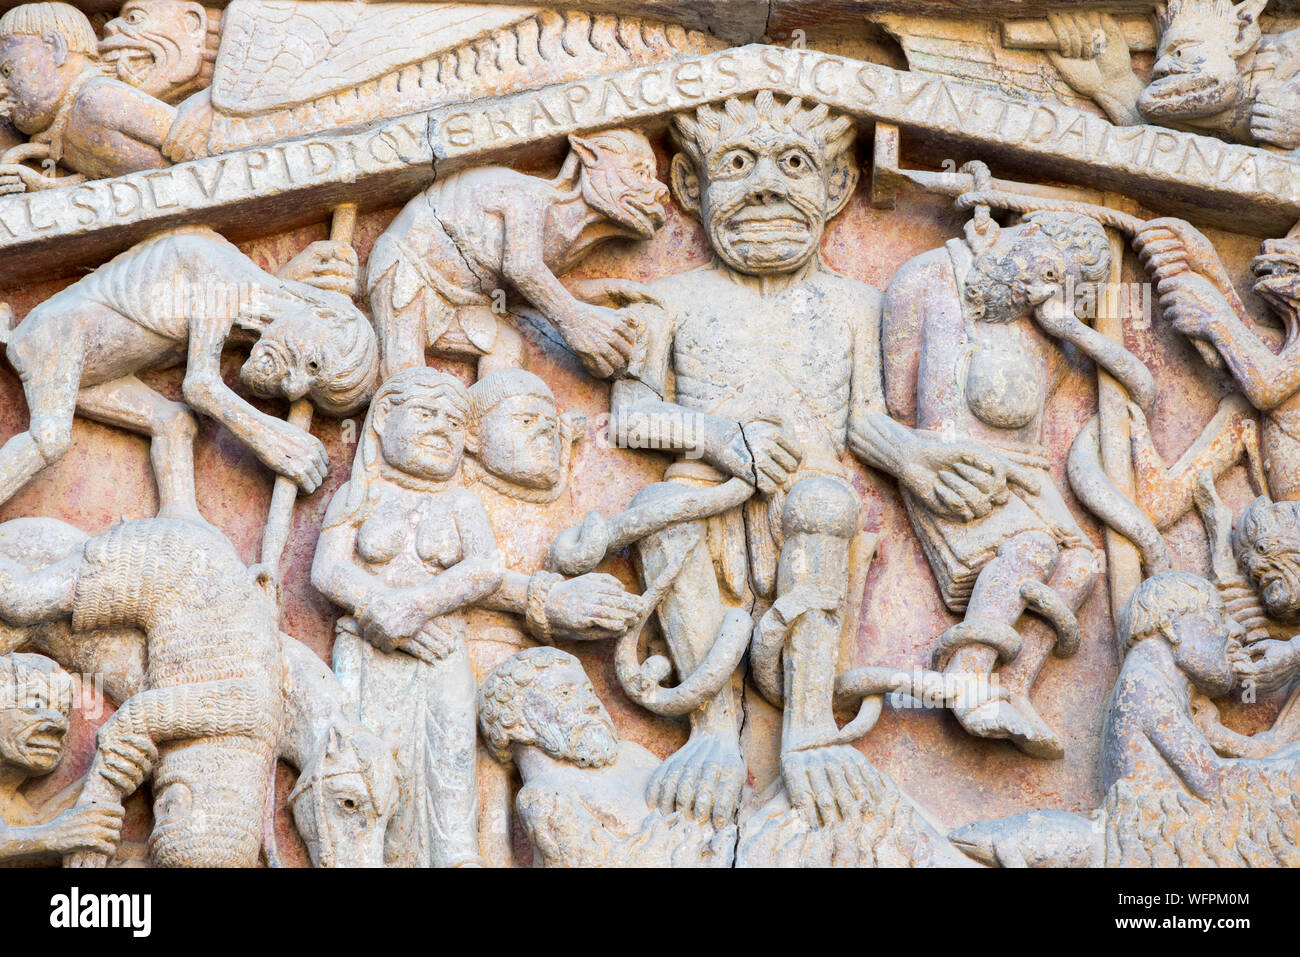 Frankreich, Aveyron, Conques, den schönsten Dörfern von Frankreich gekennzeichnet, romanische Abtei von Saint Foy aus dem 11. Jahrhundert, ein UNESCO Weltkulturerbe, Tympanon des Jüngsten Gerichts Stockfoto